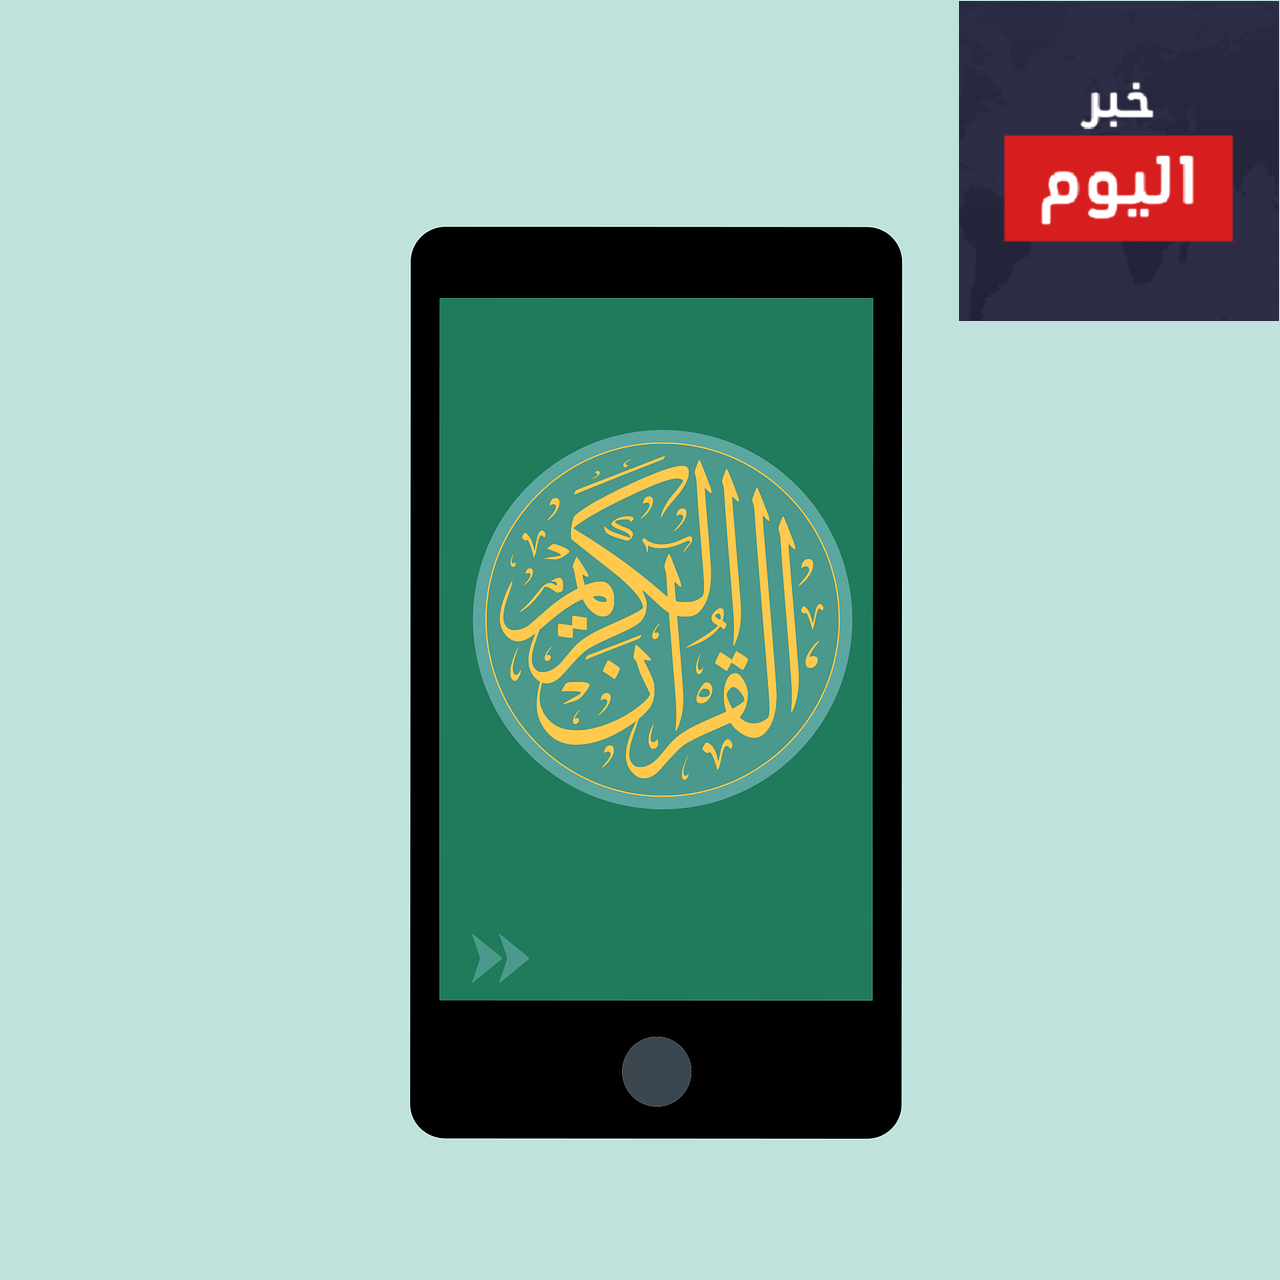 تطبيقات للجوال في شهر رمضان